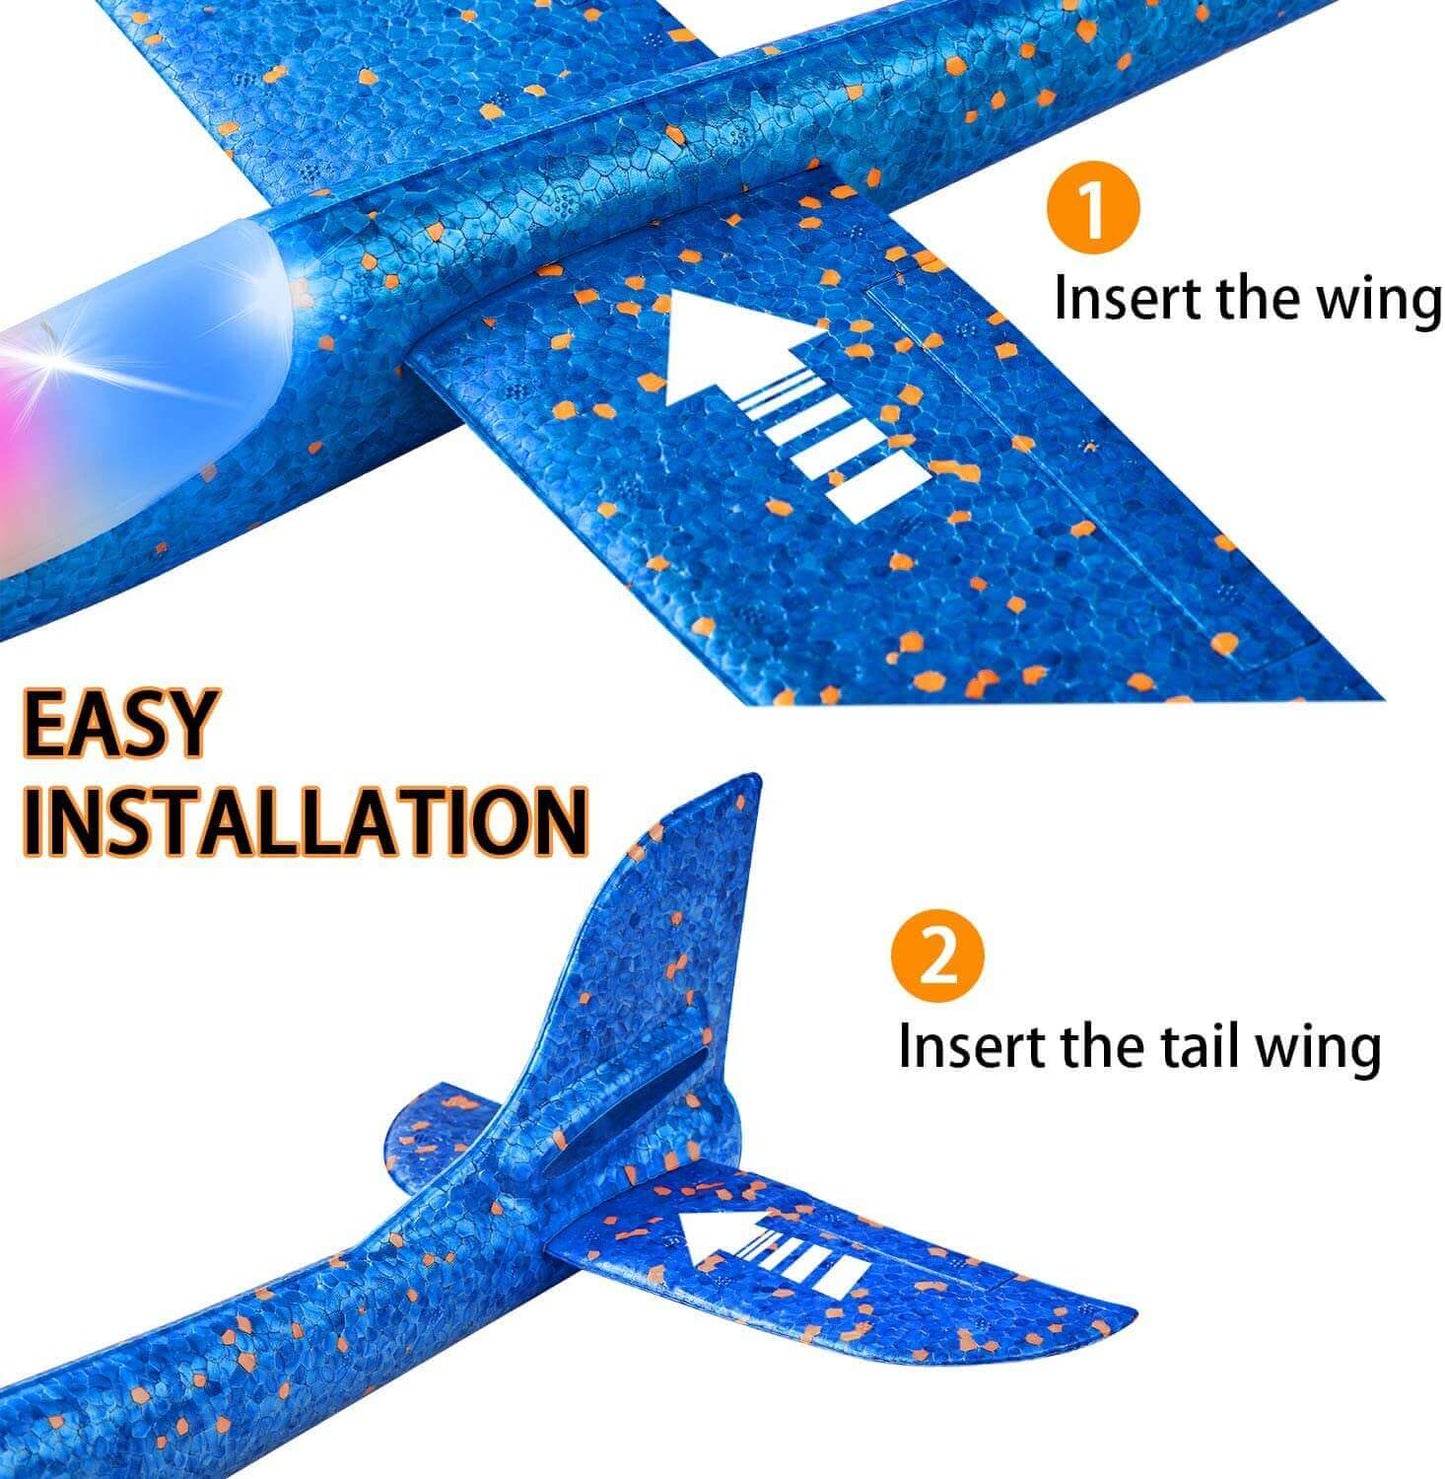 Holen Sie sich das beste fliegende Segelflugzeug-Spielzeug für Kinder – 50 cm großes Flugzeugmodell aus Schaumstoff mit LED-Licht und Handwurf für Spaß und Spiele im Freien